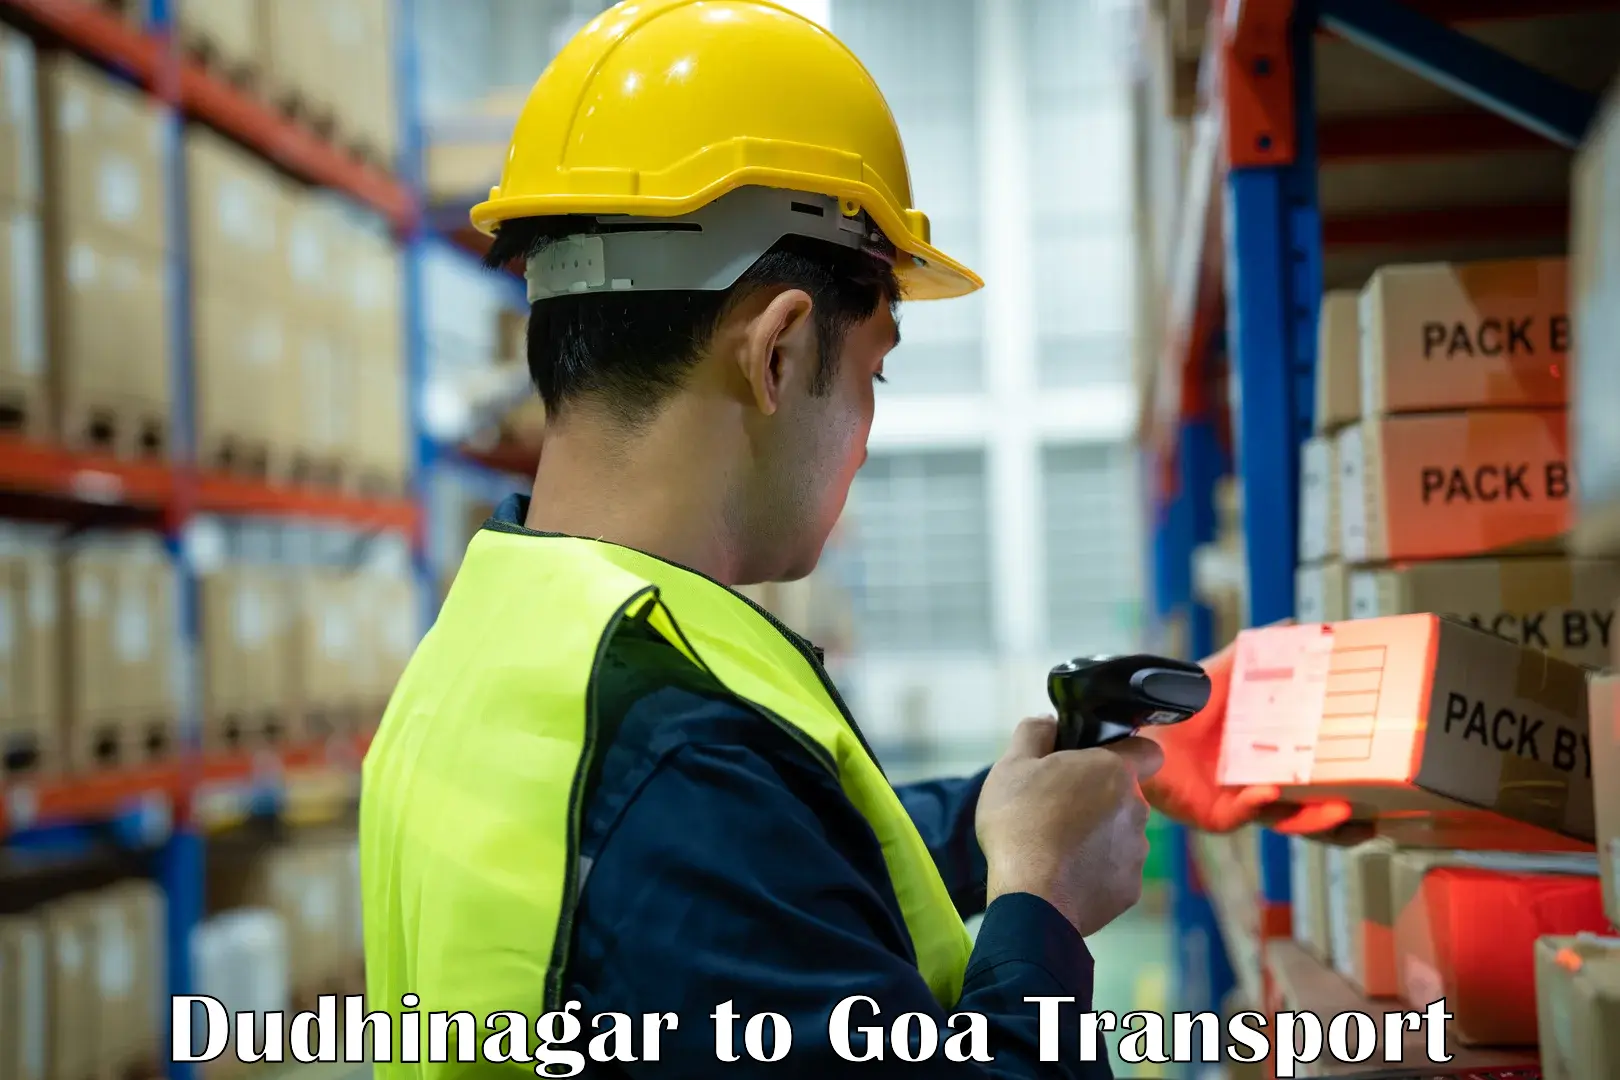 Daily parcel service transport Dudhinagar to Mormugao Port